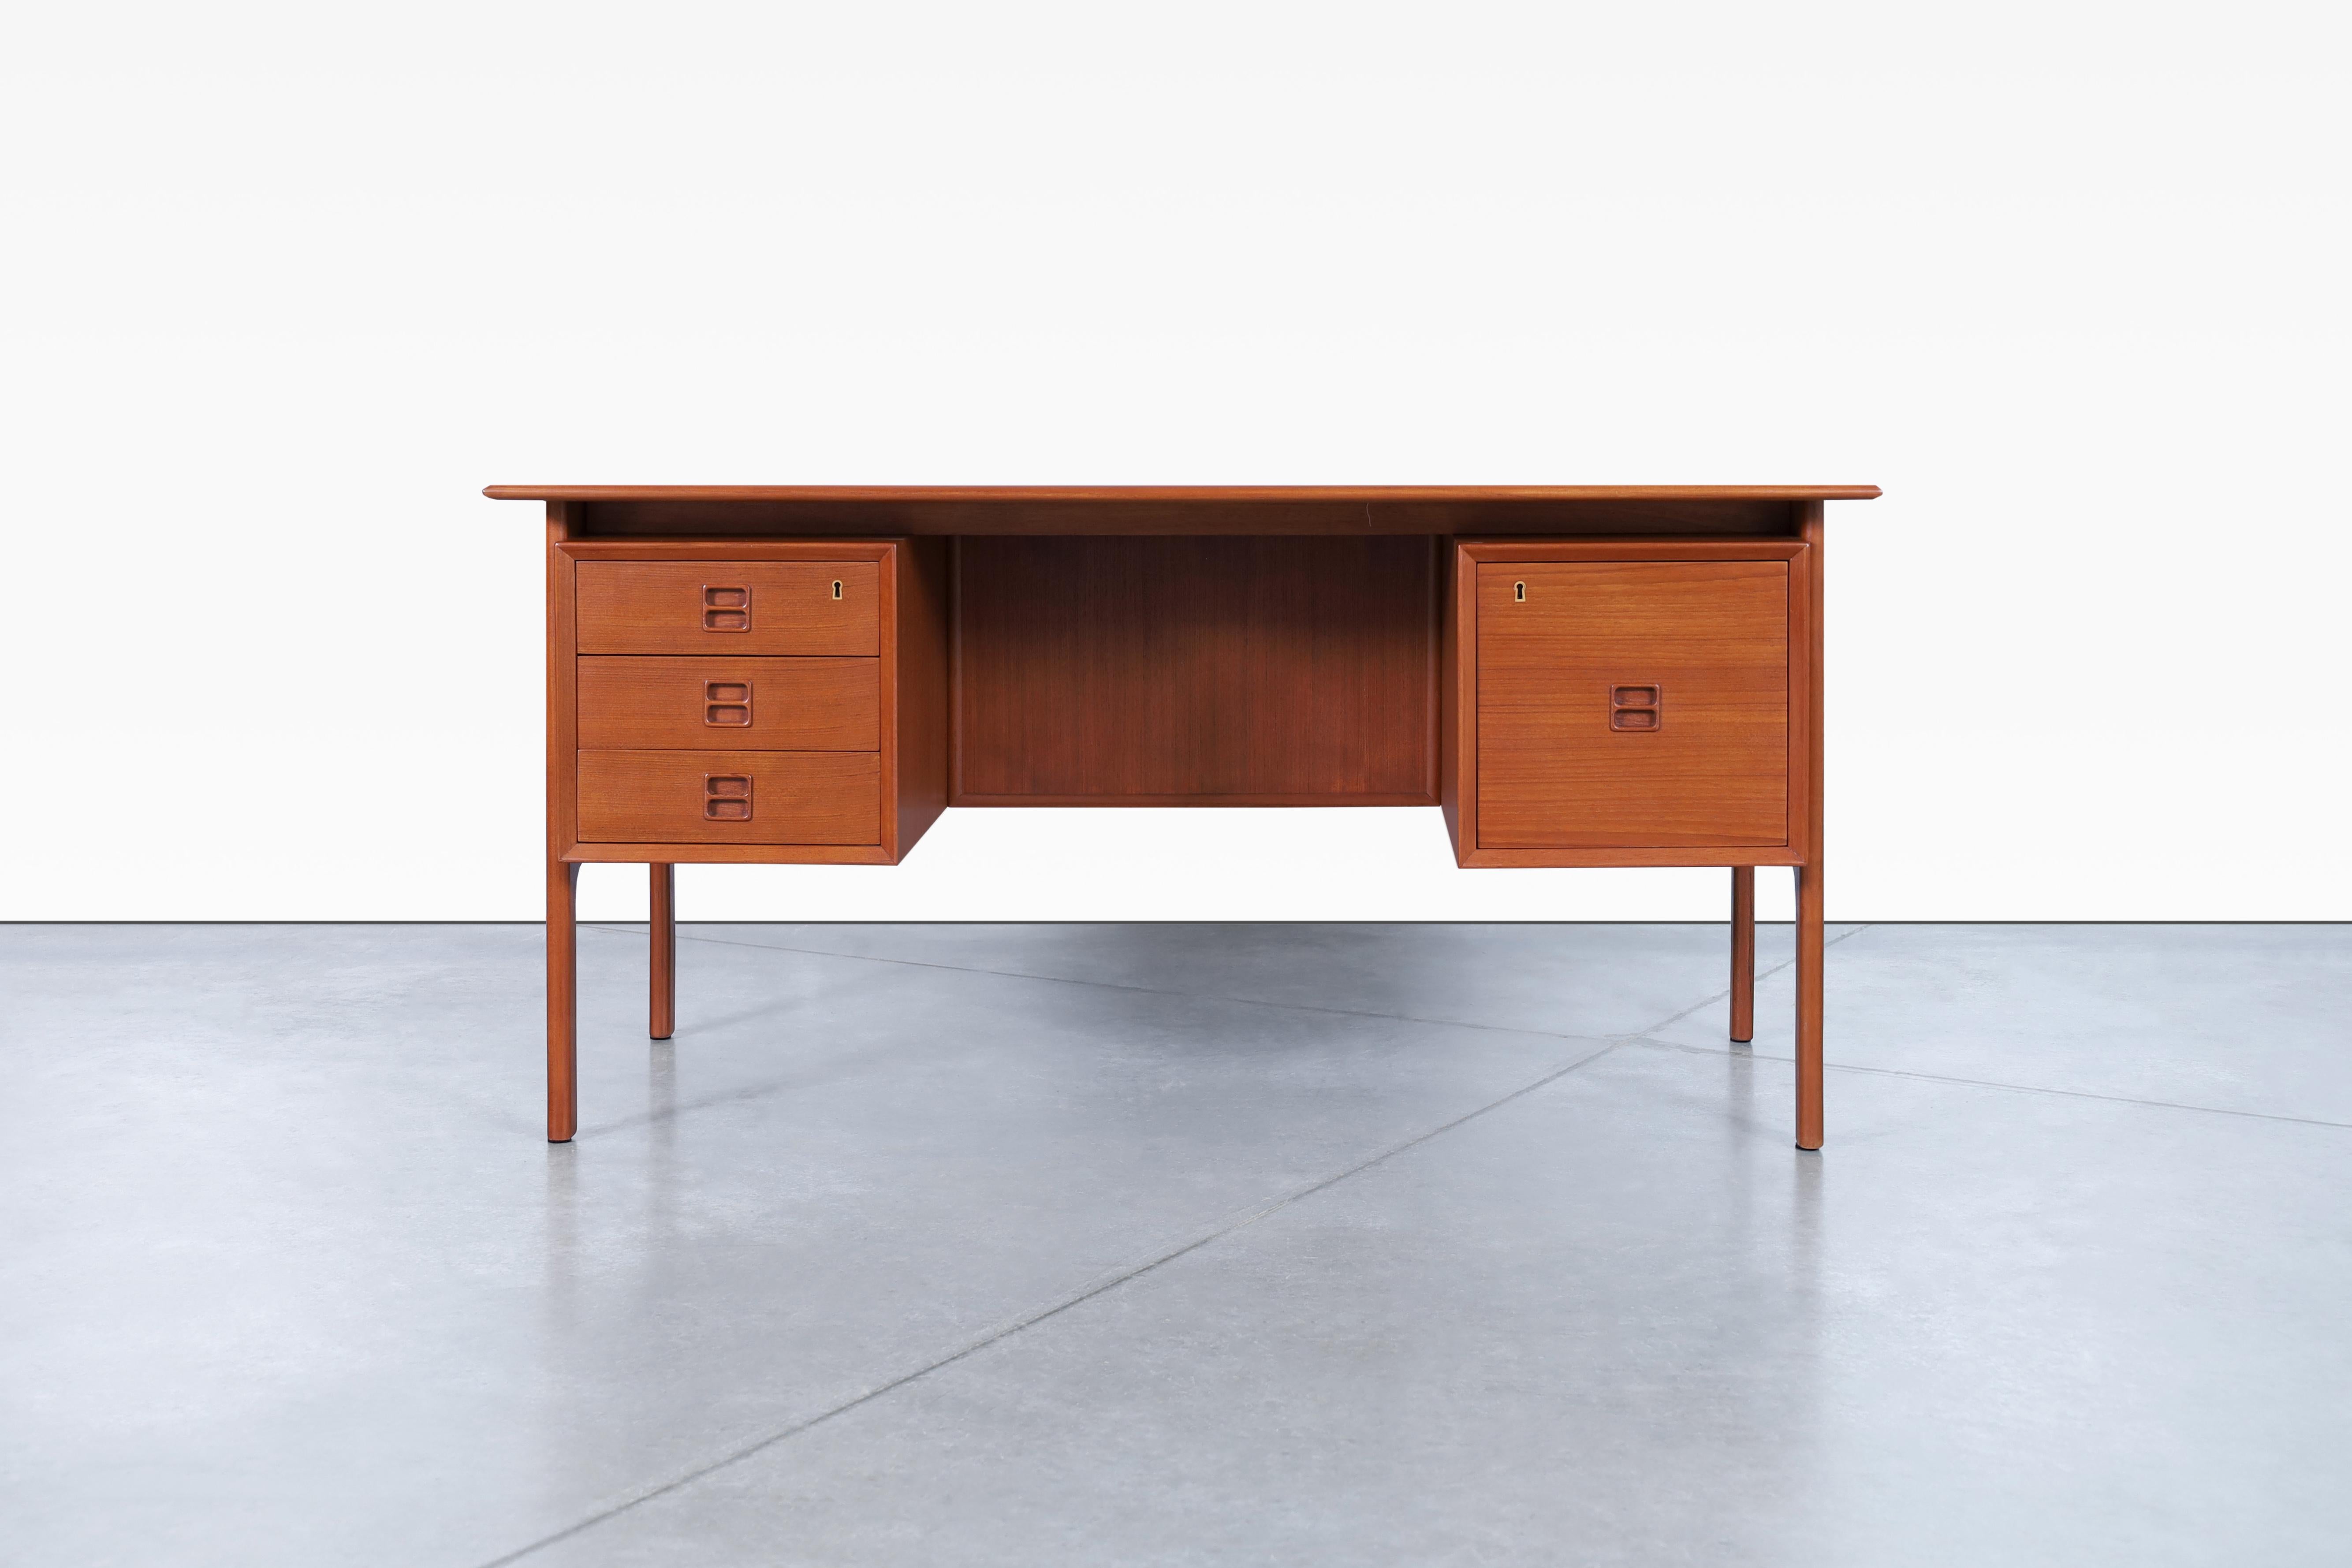 Maravilloso escritorio moderno danés de teca diseñado por Erik Brouer para Brouer Møbelfabrik en Dinamarca, hacia la década de 1960. Este asombroso escritorio reformado ha sido elaborado por expertos para representar en gran medida el diseño danés,